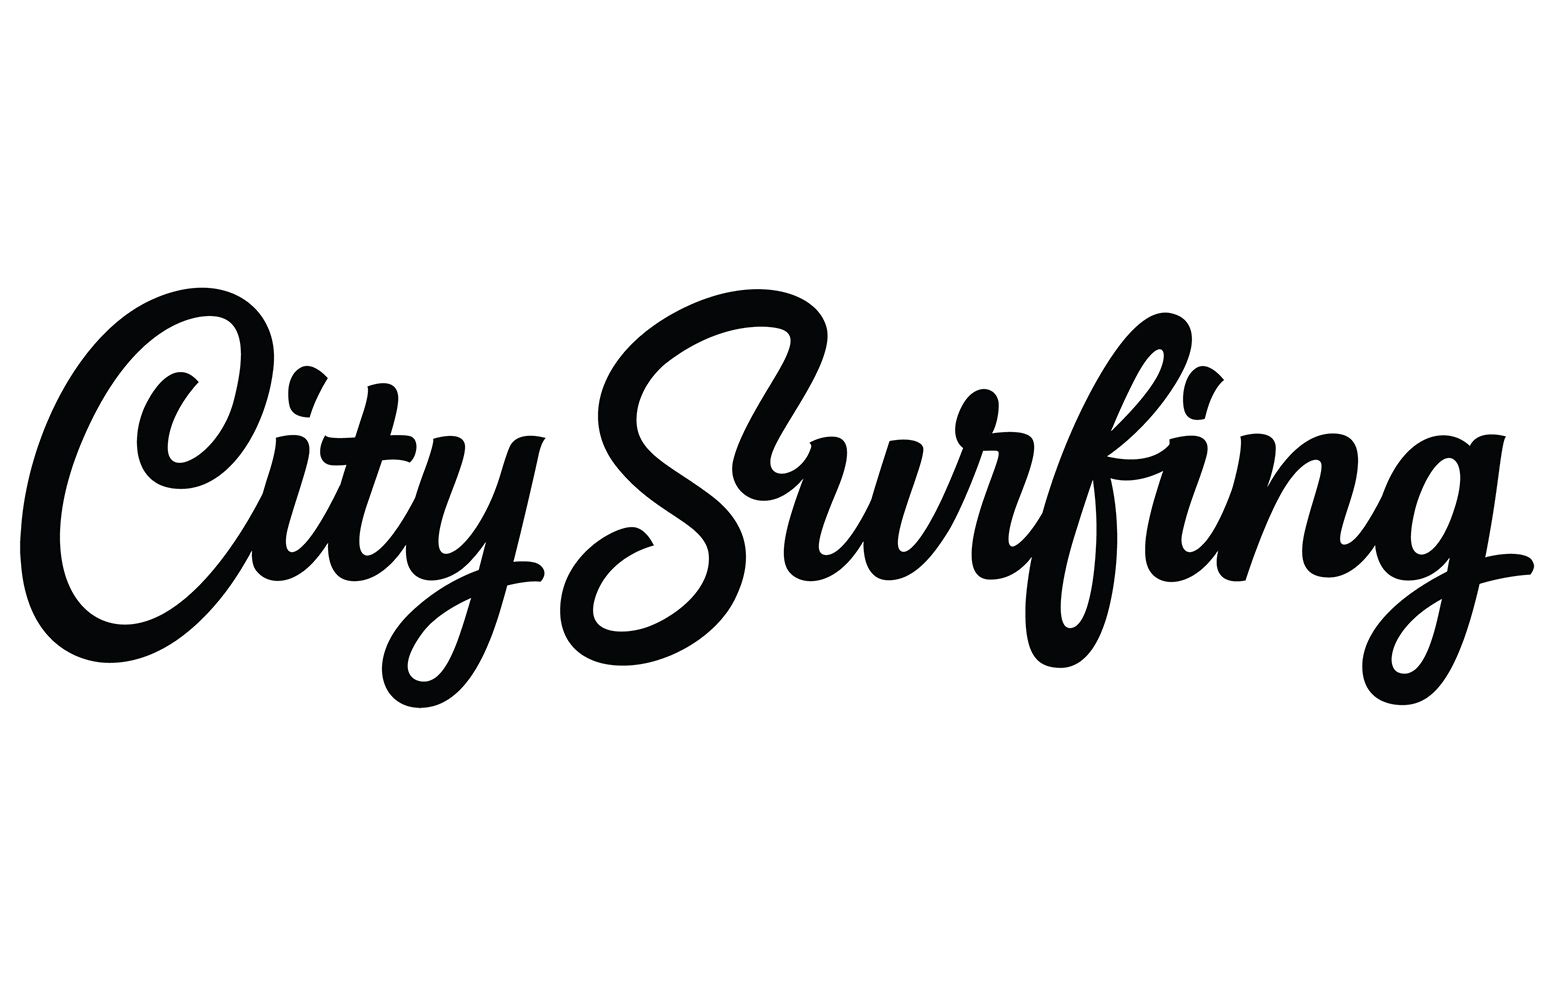 Citysurfing LLC Logo